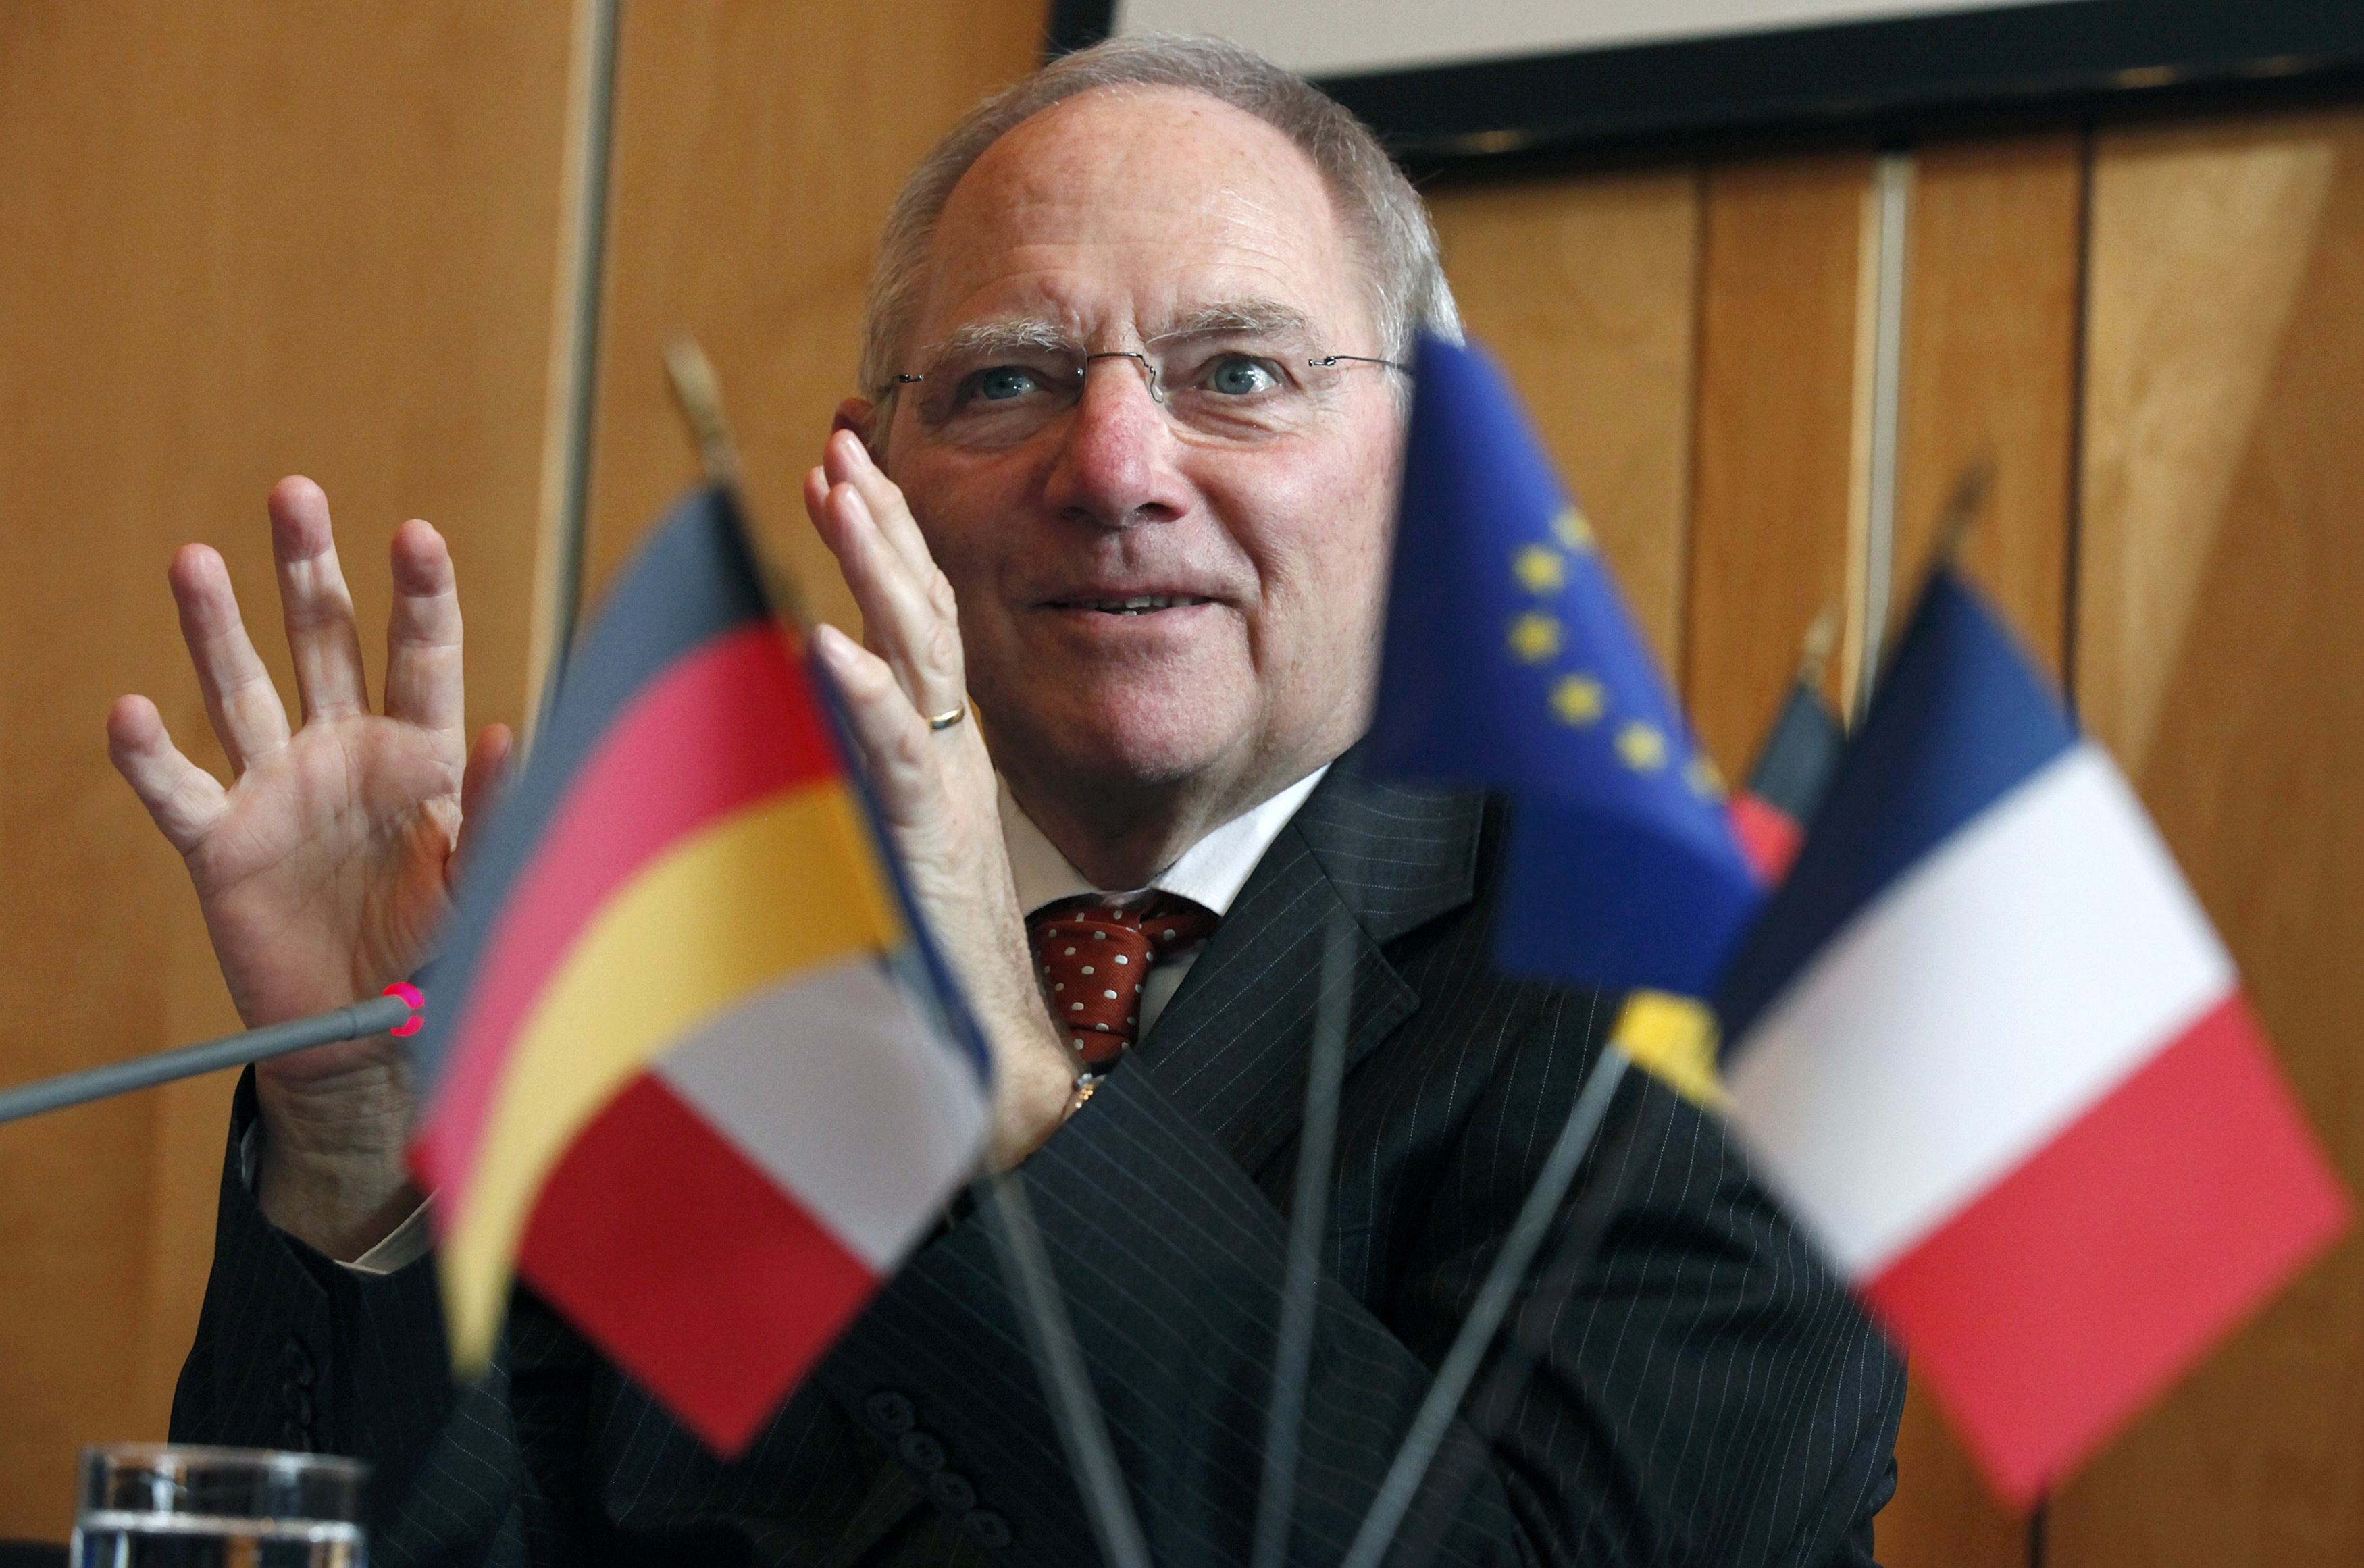 Αρχηγό του Eurogroup και Βουλή μόνο για την Ευρωζώνη ζητάει ο Σόιμπλε